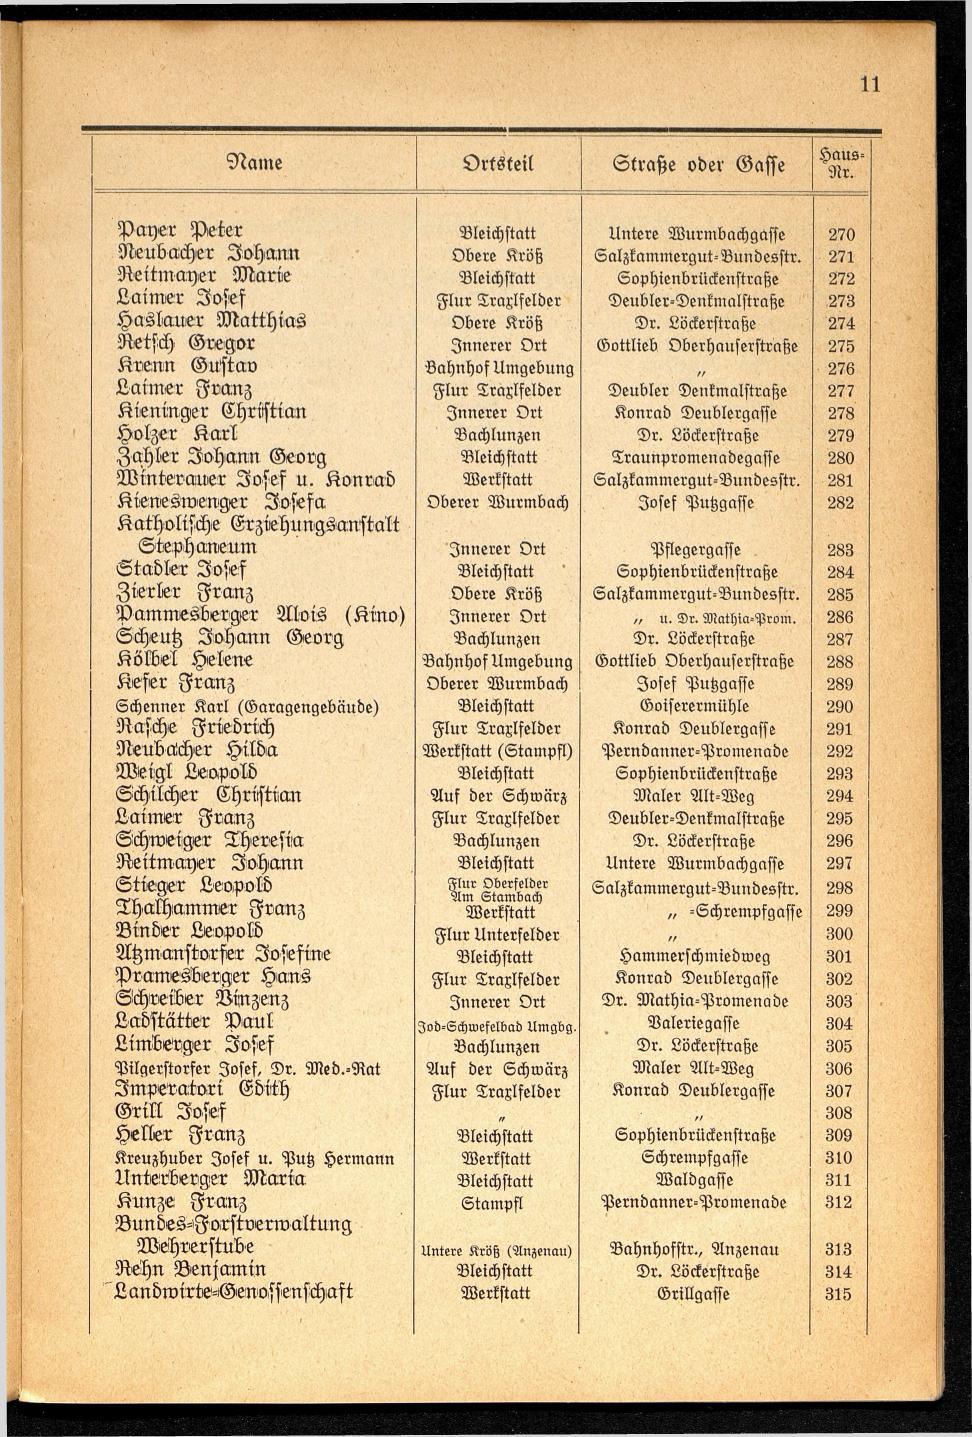 Häuser-Verzeichnis der Gemeinde Goisern nach dem Stande von November 1937 - Seite 13